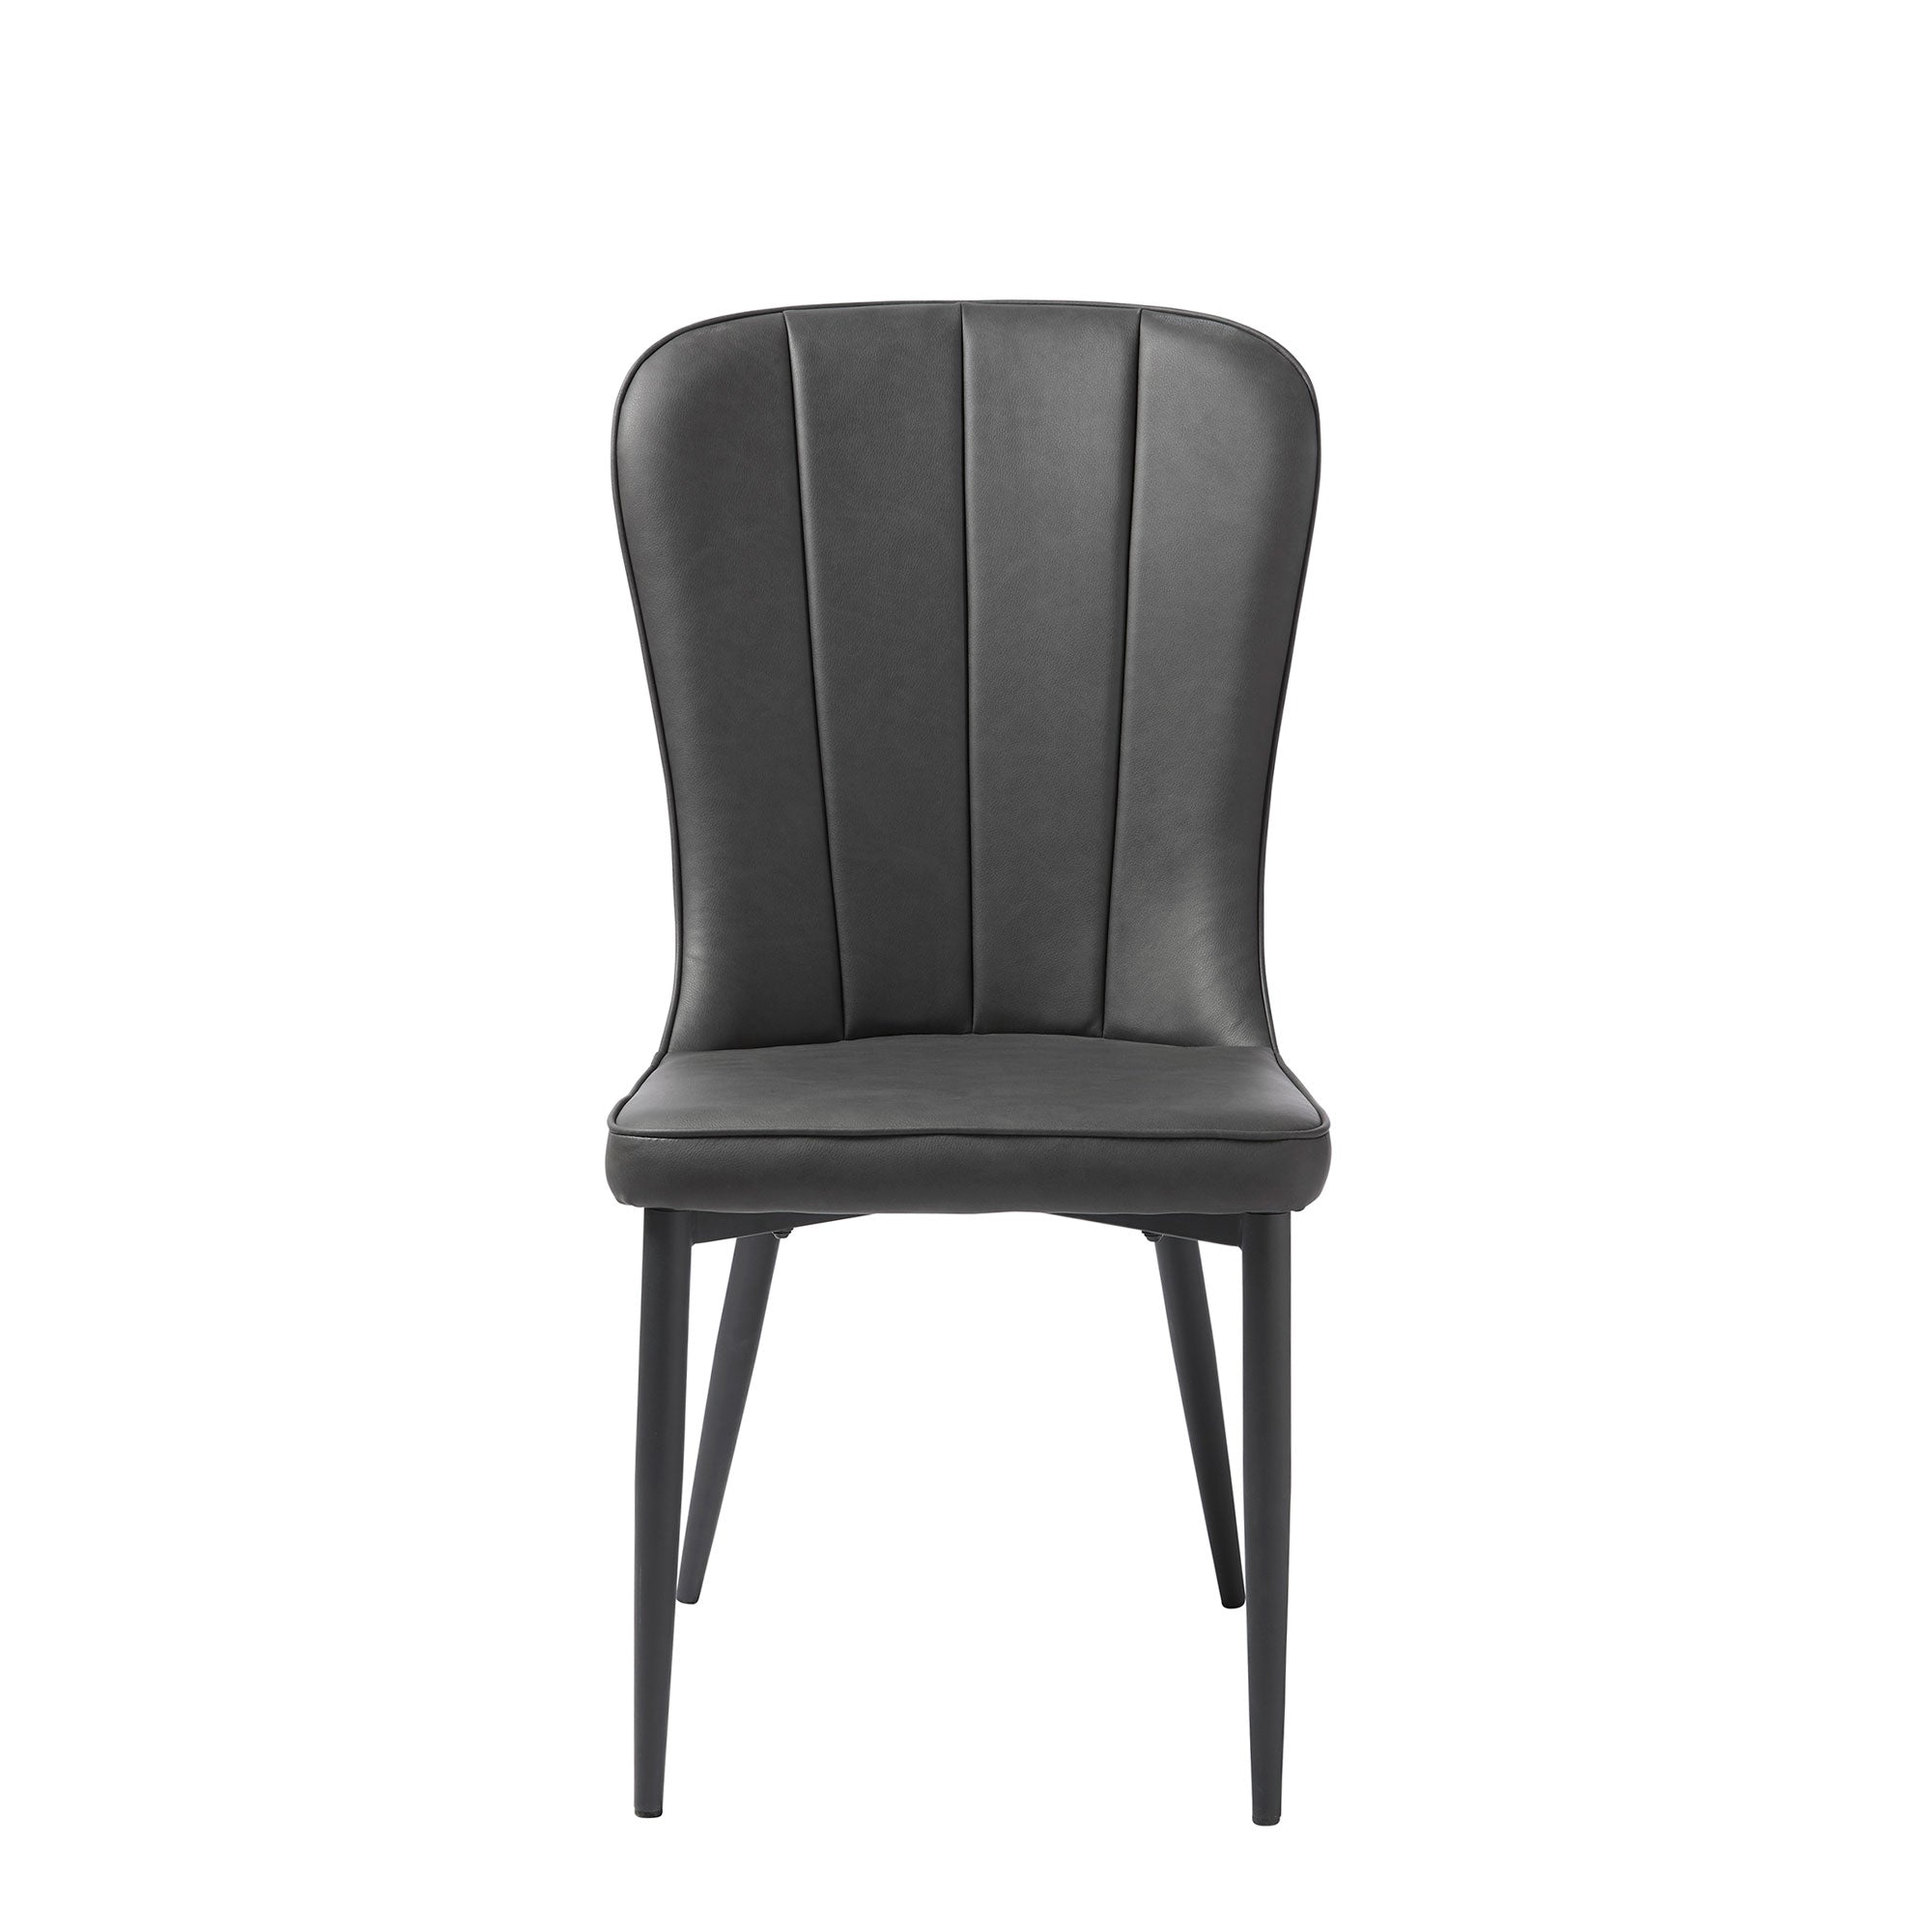 Dining Chair In Dark Grey PU & Black Metal Legs